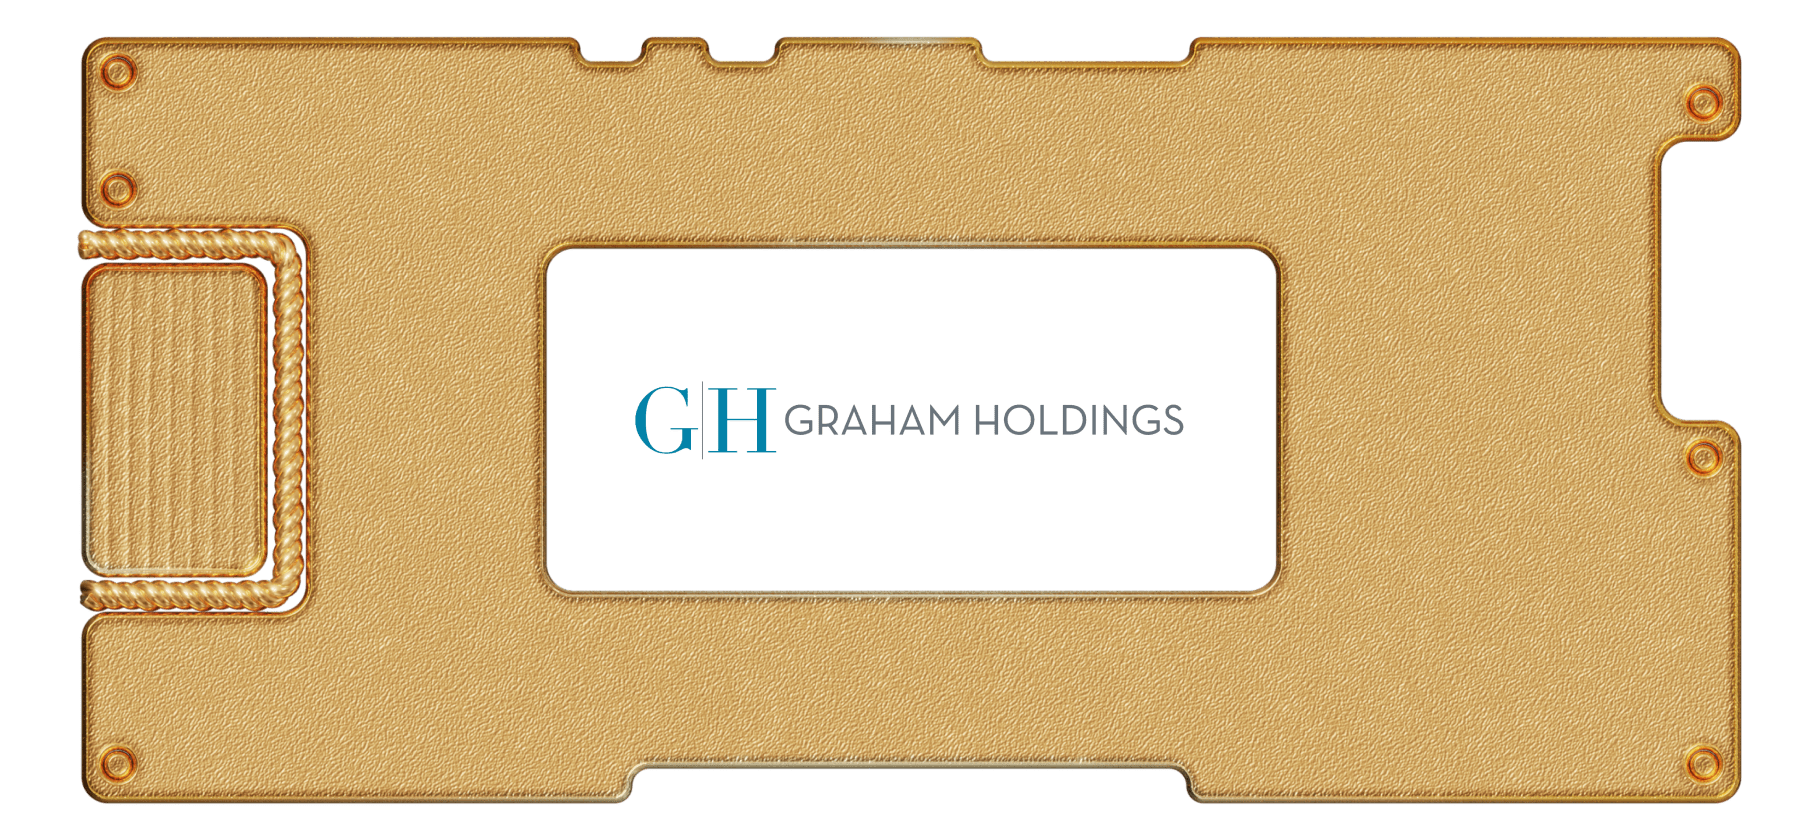 Инвестидея: Graham Holdings, потому что Баффетт одобряет